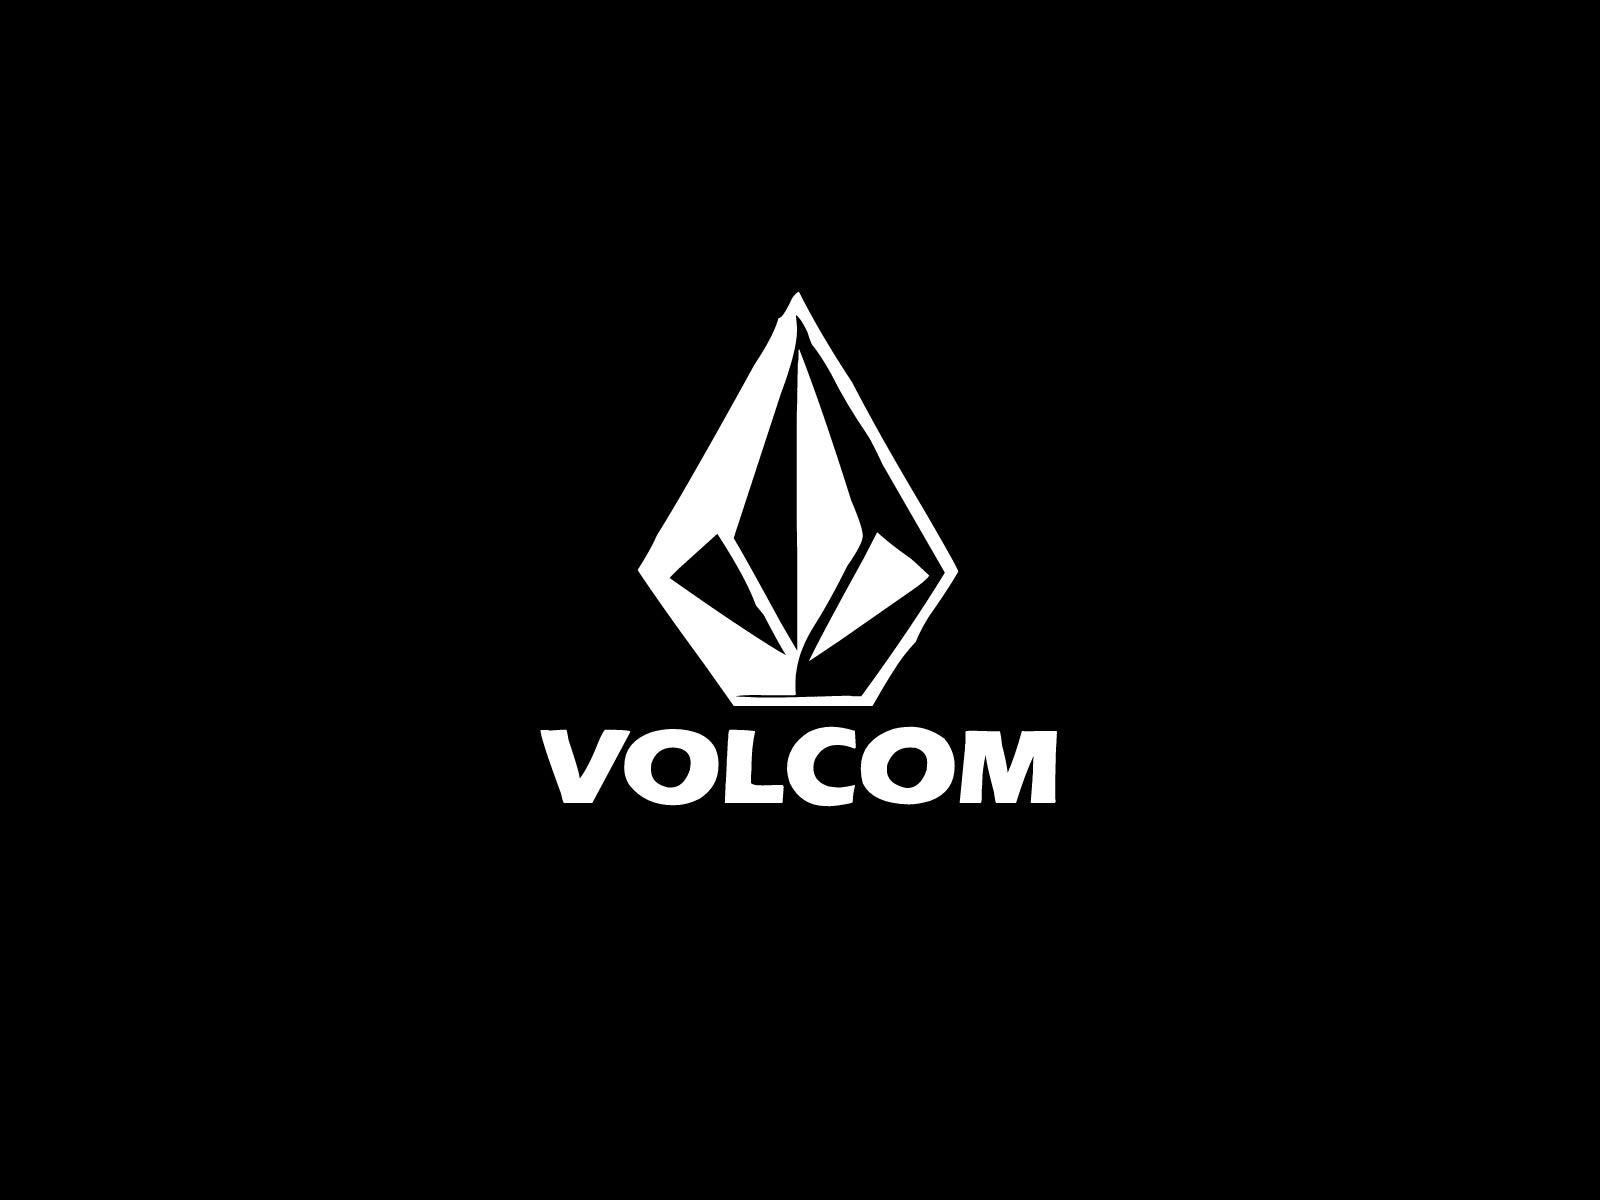 Cool Volcom Logo - Cool Volcom Logos | www.topsimages.com